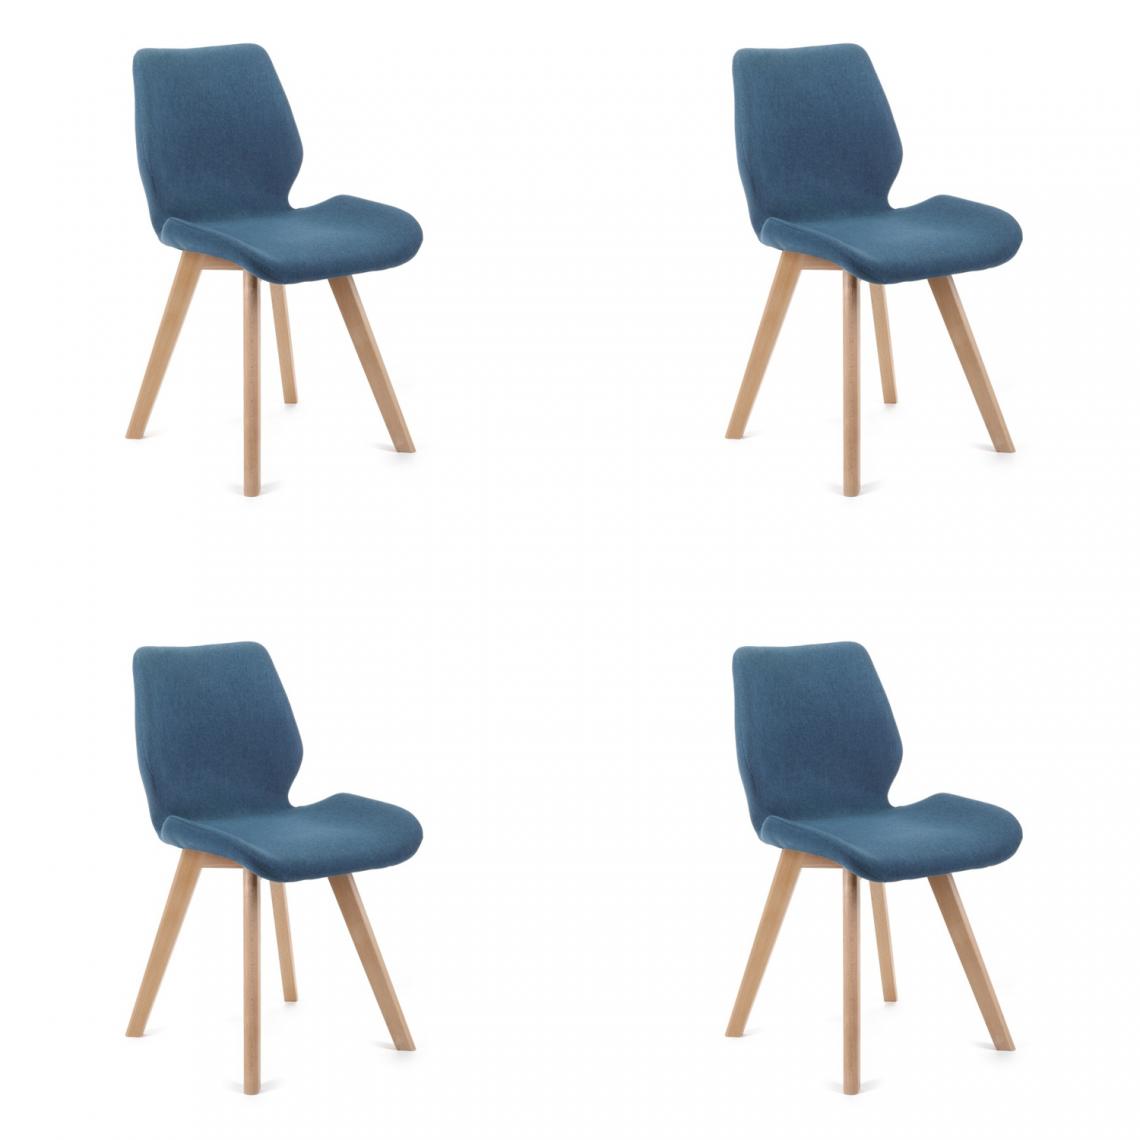 Hucoco - BROLI - Chaise rembourrée 4 pcs style moderne salon/salle à manger - 82.5x40x53 - Pieds en bois - Bleu - Chaises